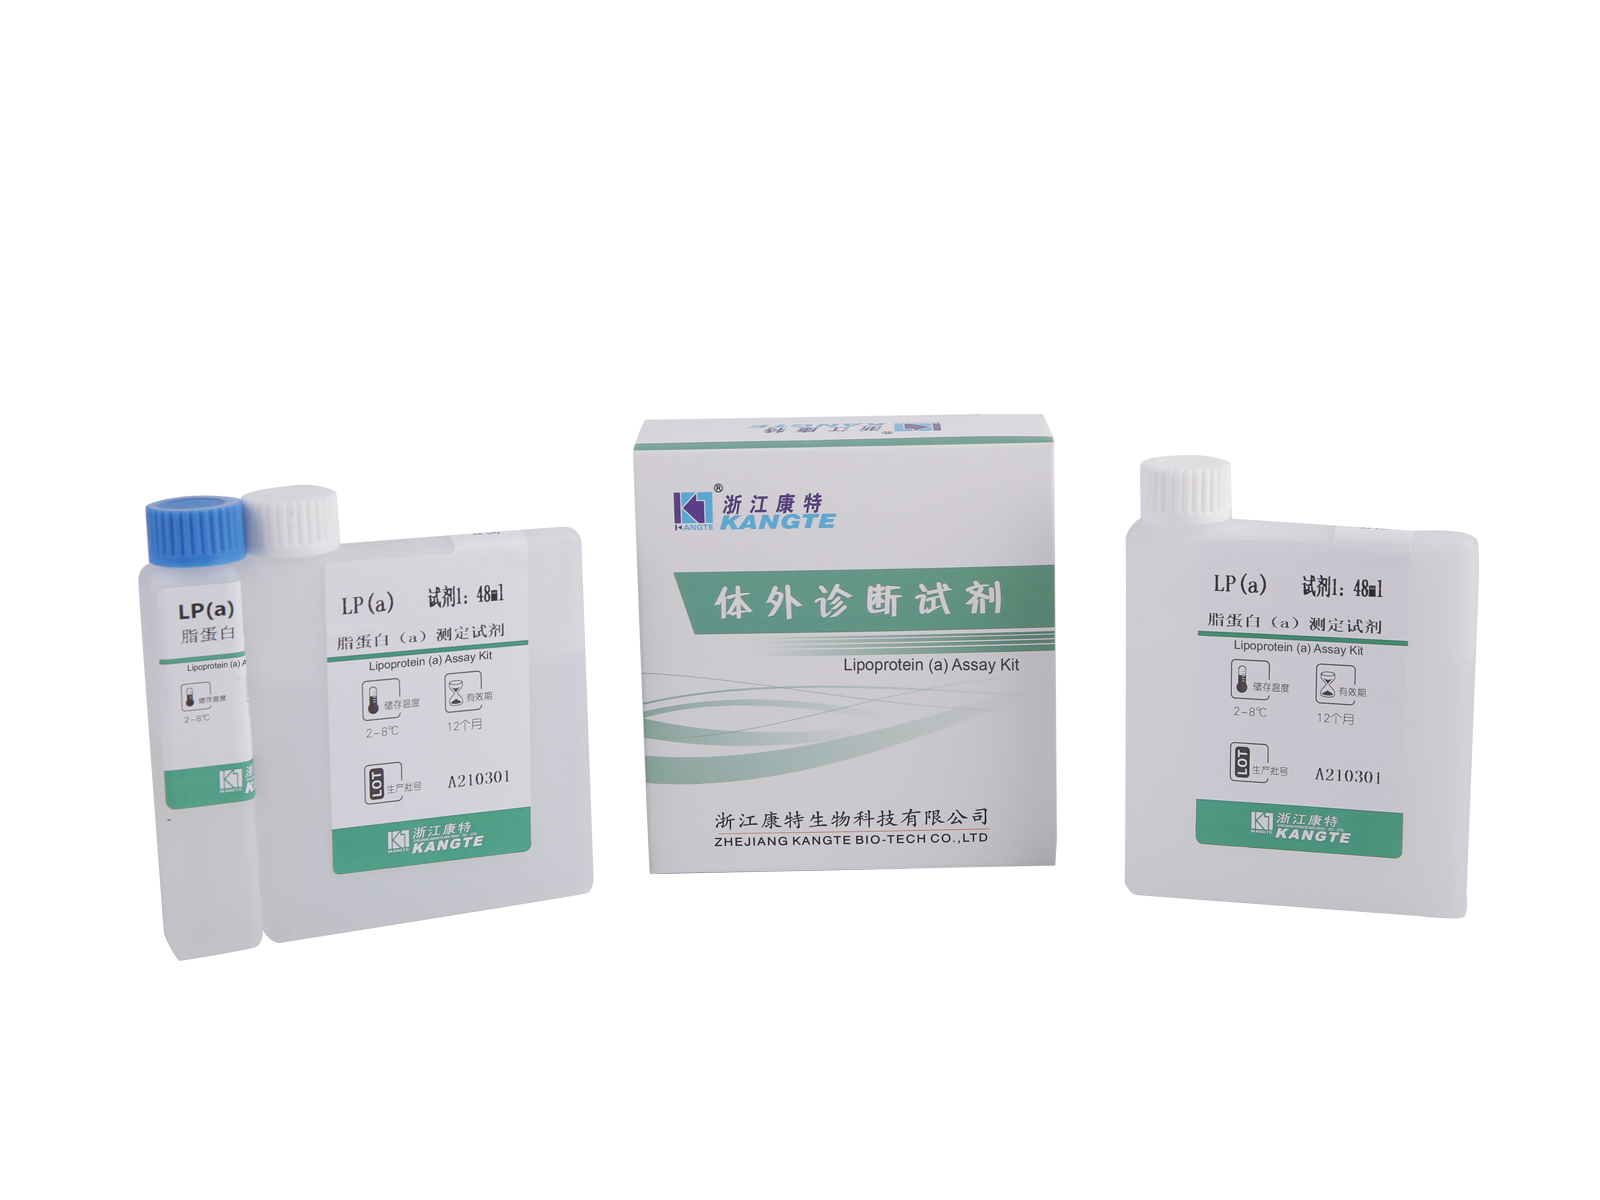 【LP(a)】 Lipoprotein (a) Assay Kit (latexförstärkt immunoturbidimetrisk metod)